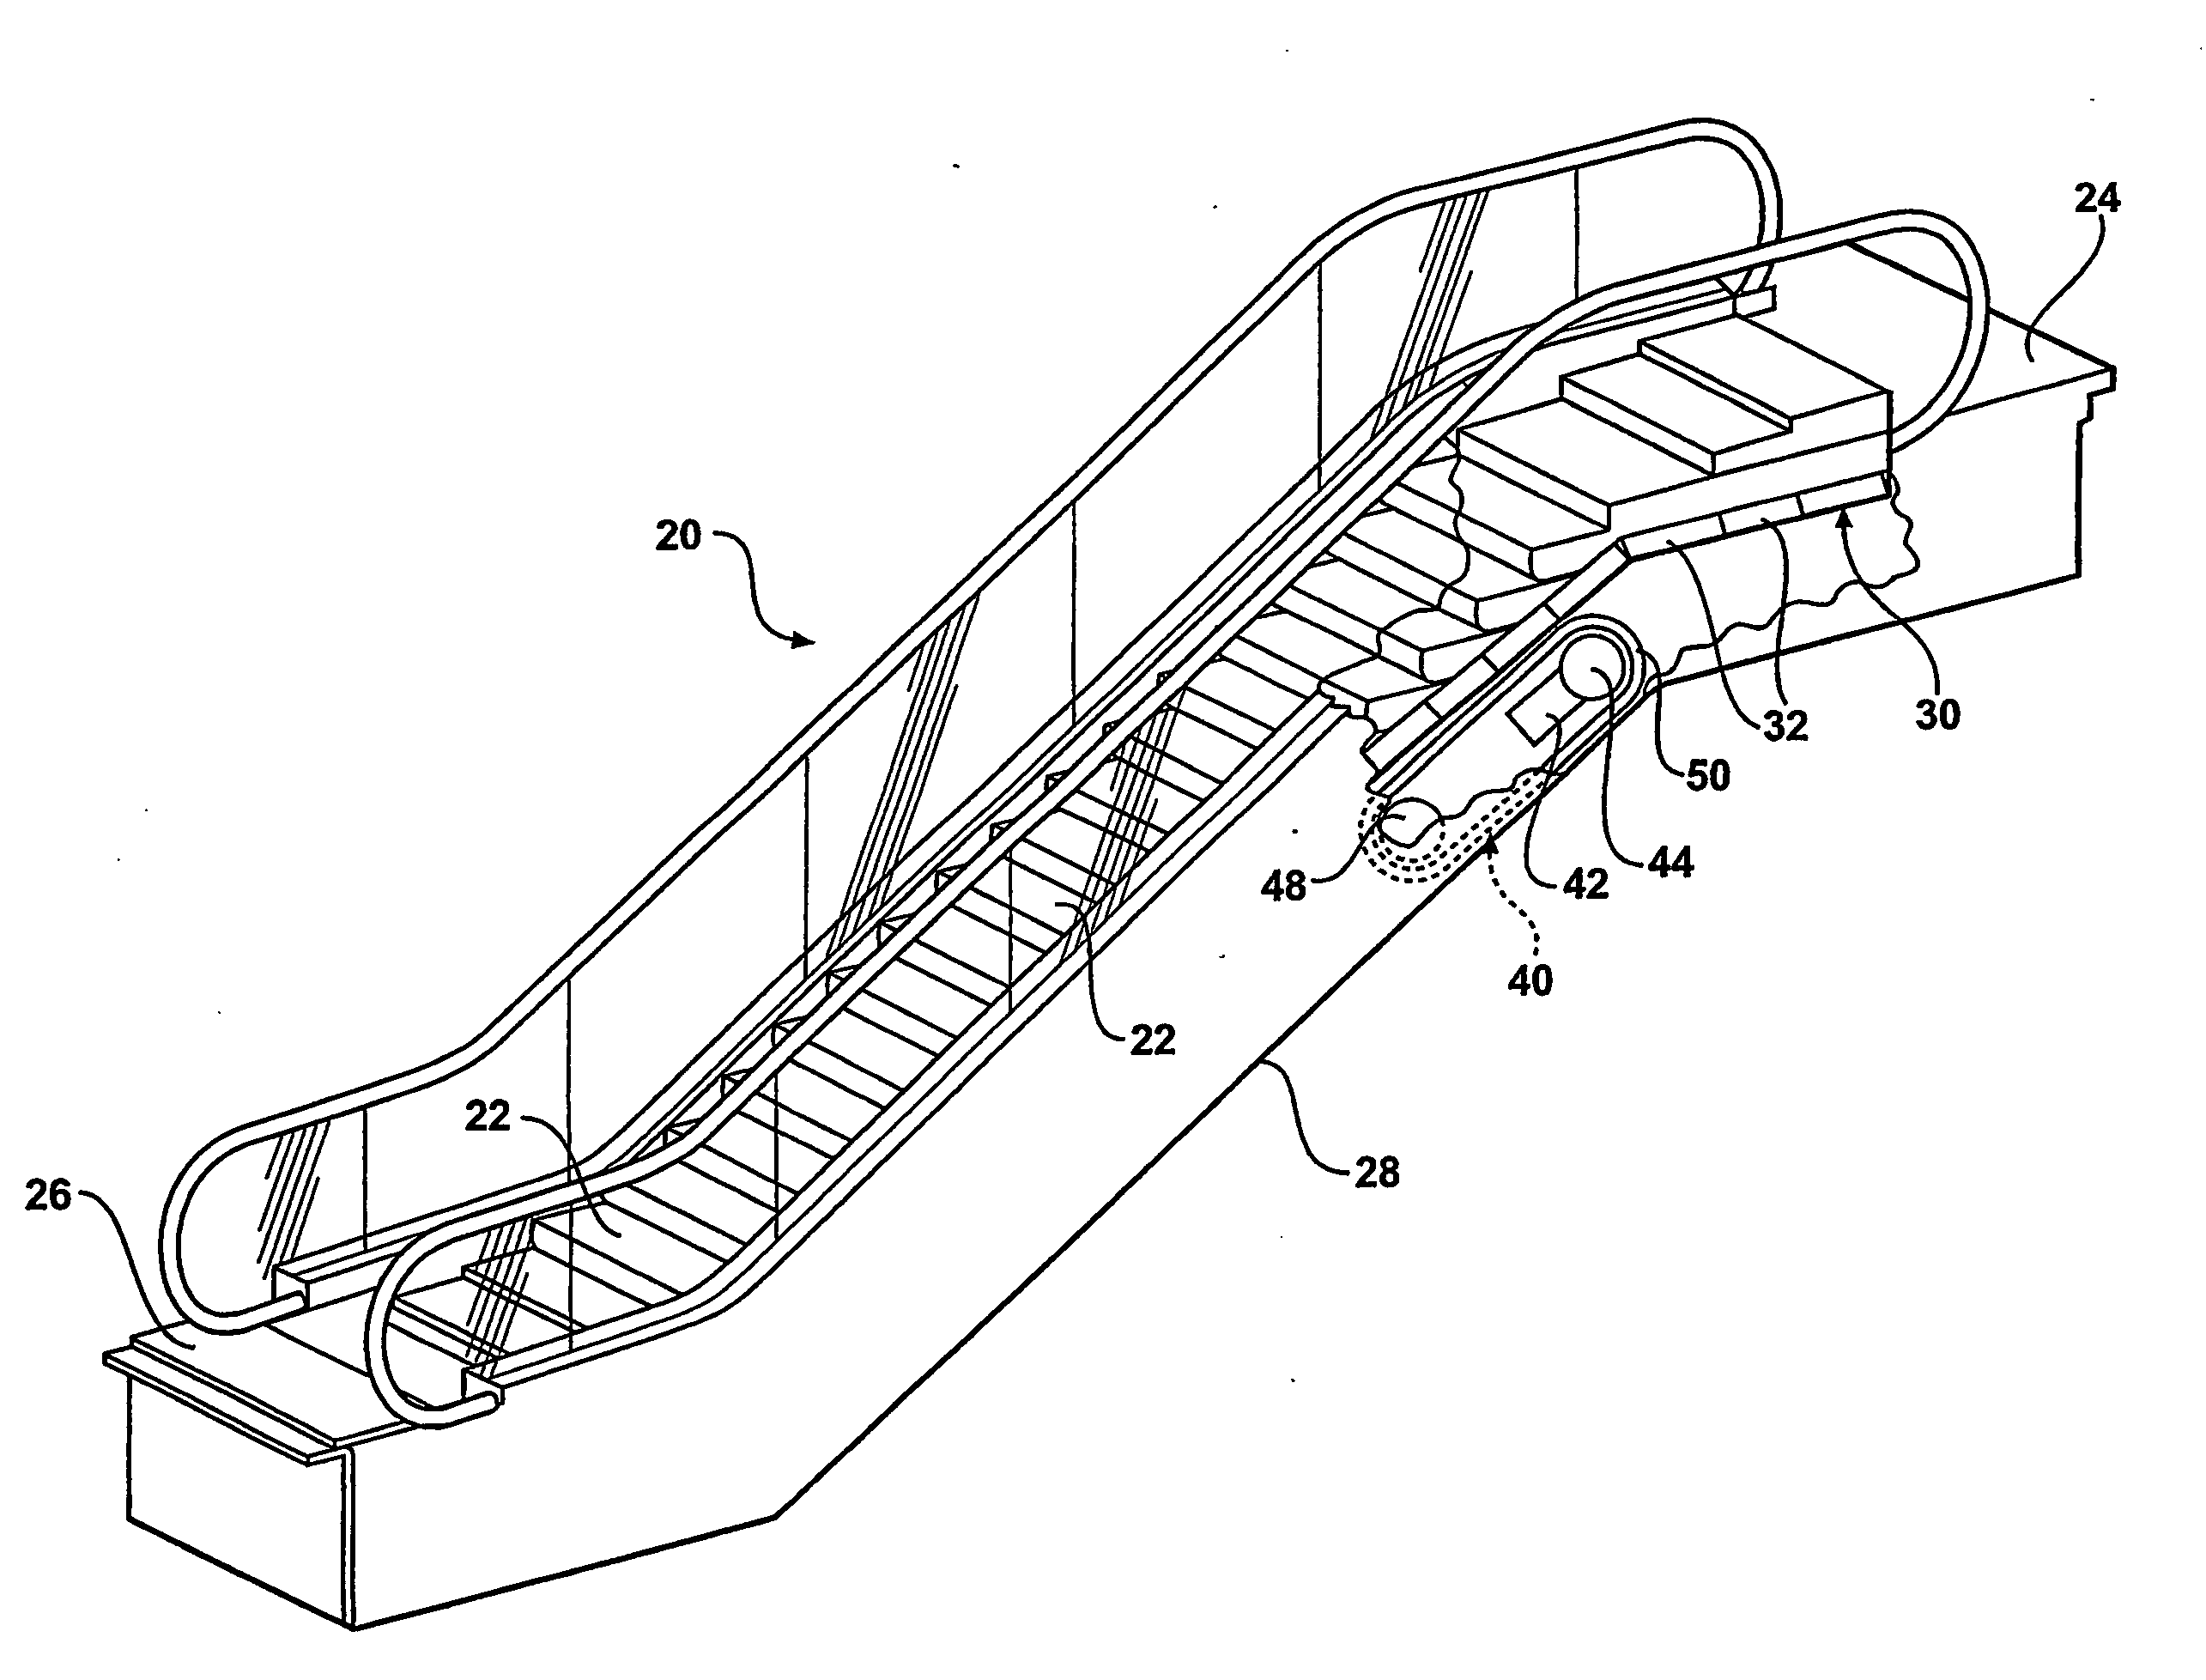 Drive belt for a passenger conveyor